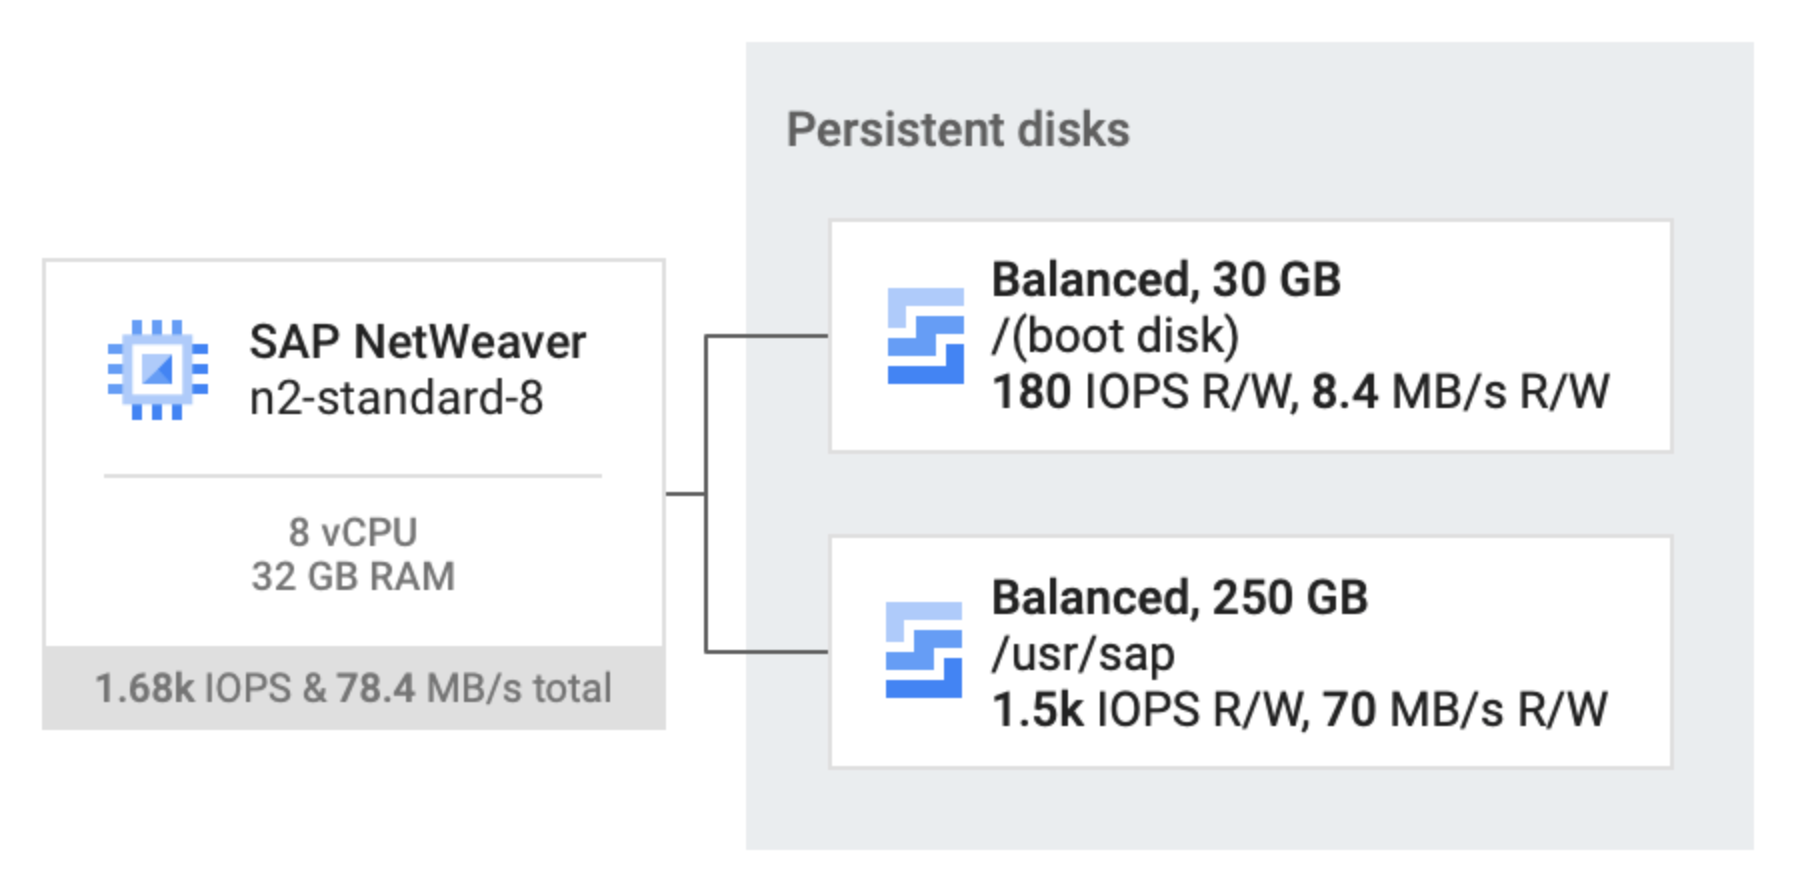 Deux disques persistants équilibrés, l'un de 80 Go et l'autre de 250 Go, sont associés à une VM hôte n2-standard-32 qui exécute SAP NetWeaver.